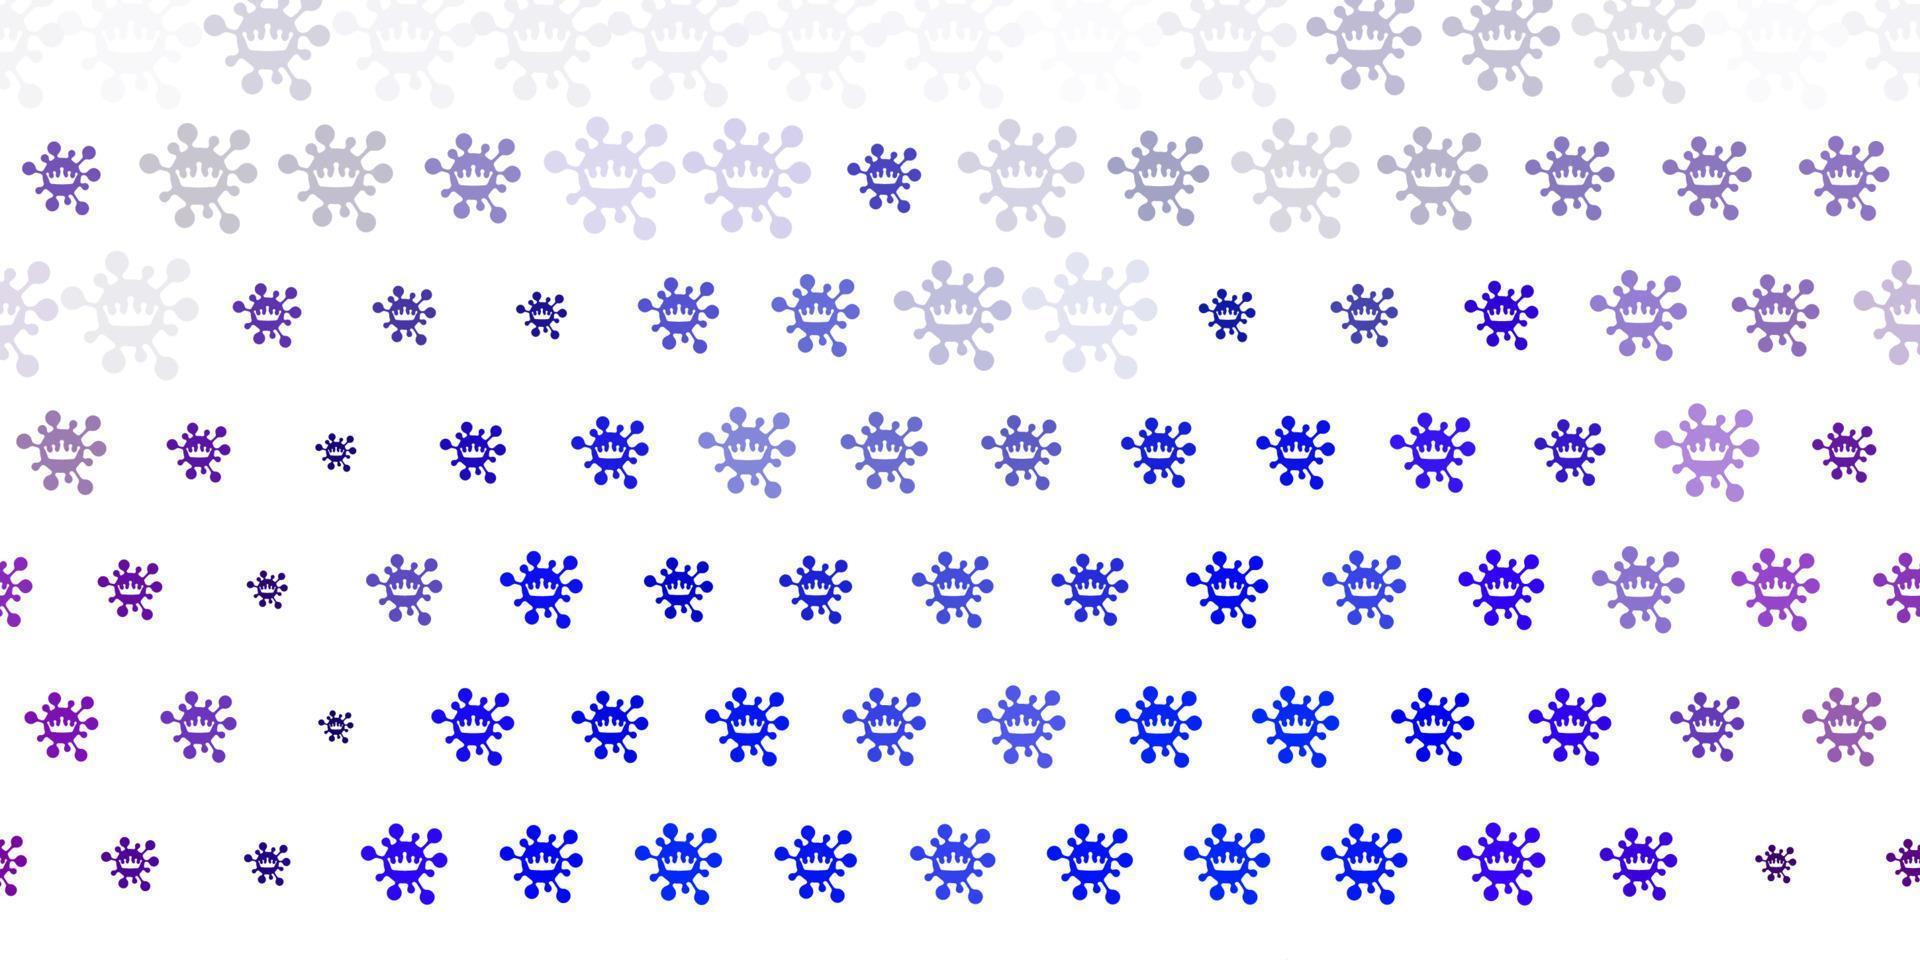 ljusrosa, blå vektorbakgrund med covid-19 symboler. vektor